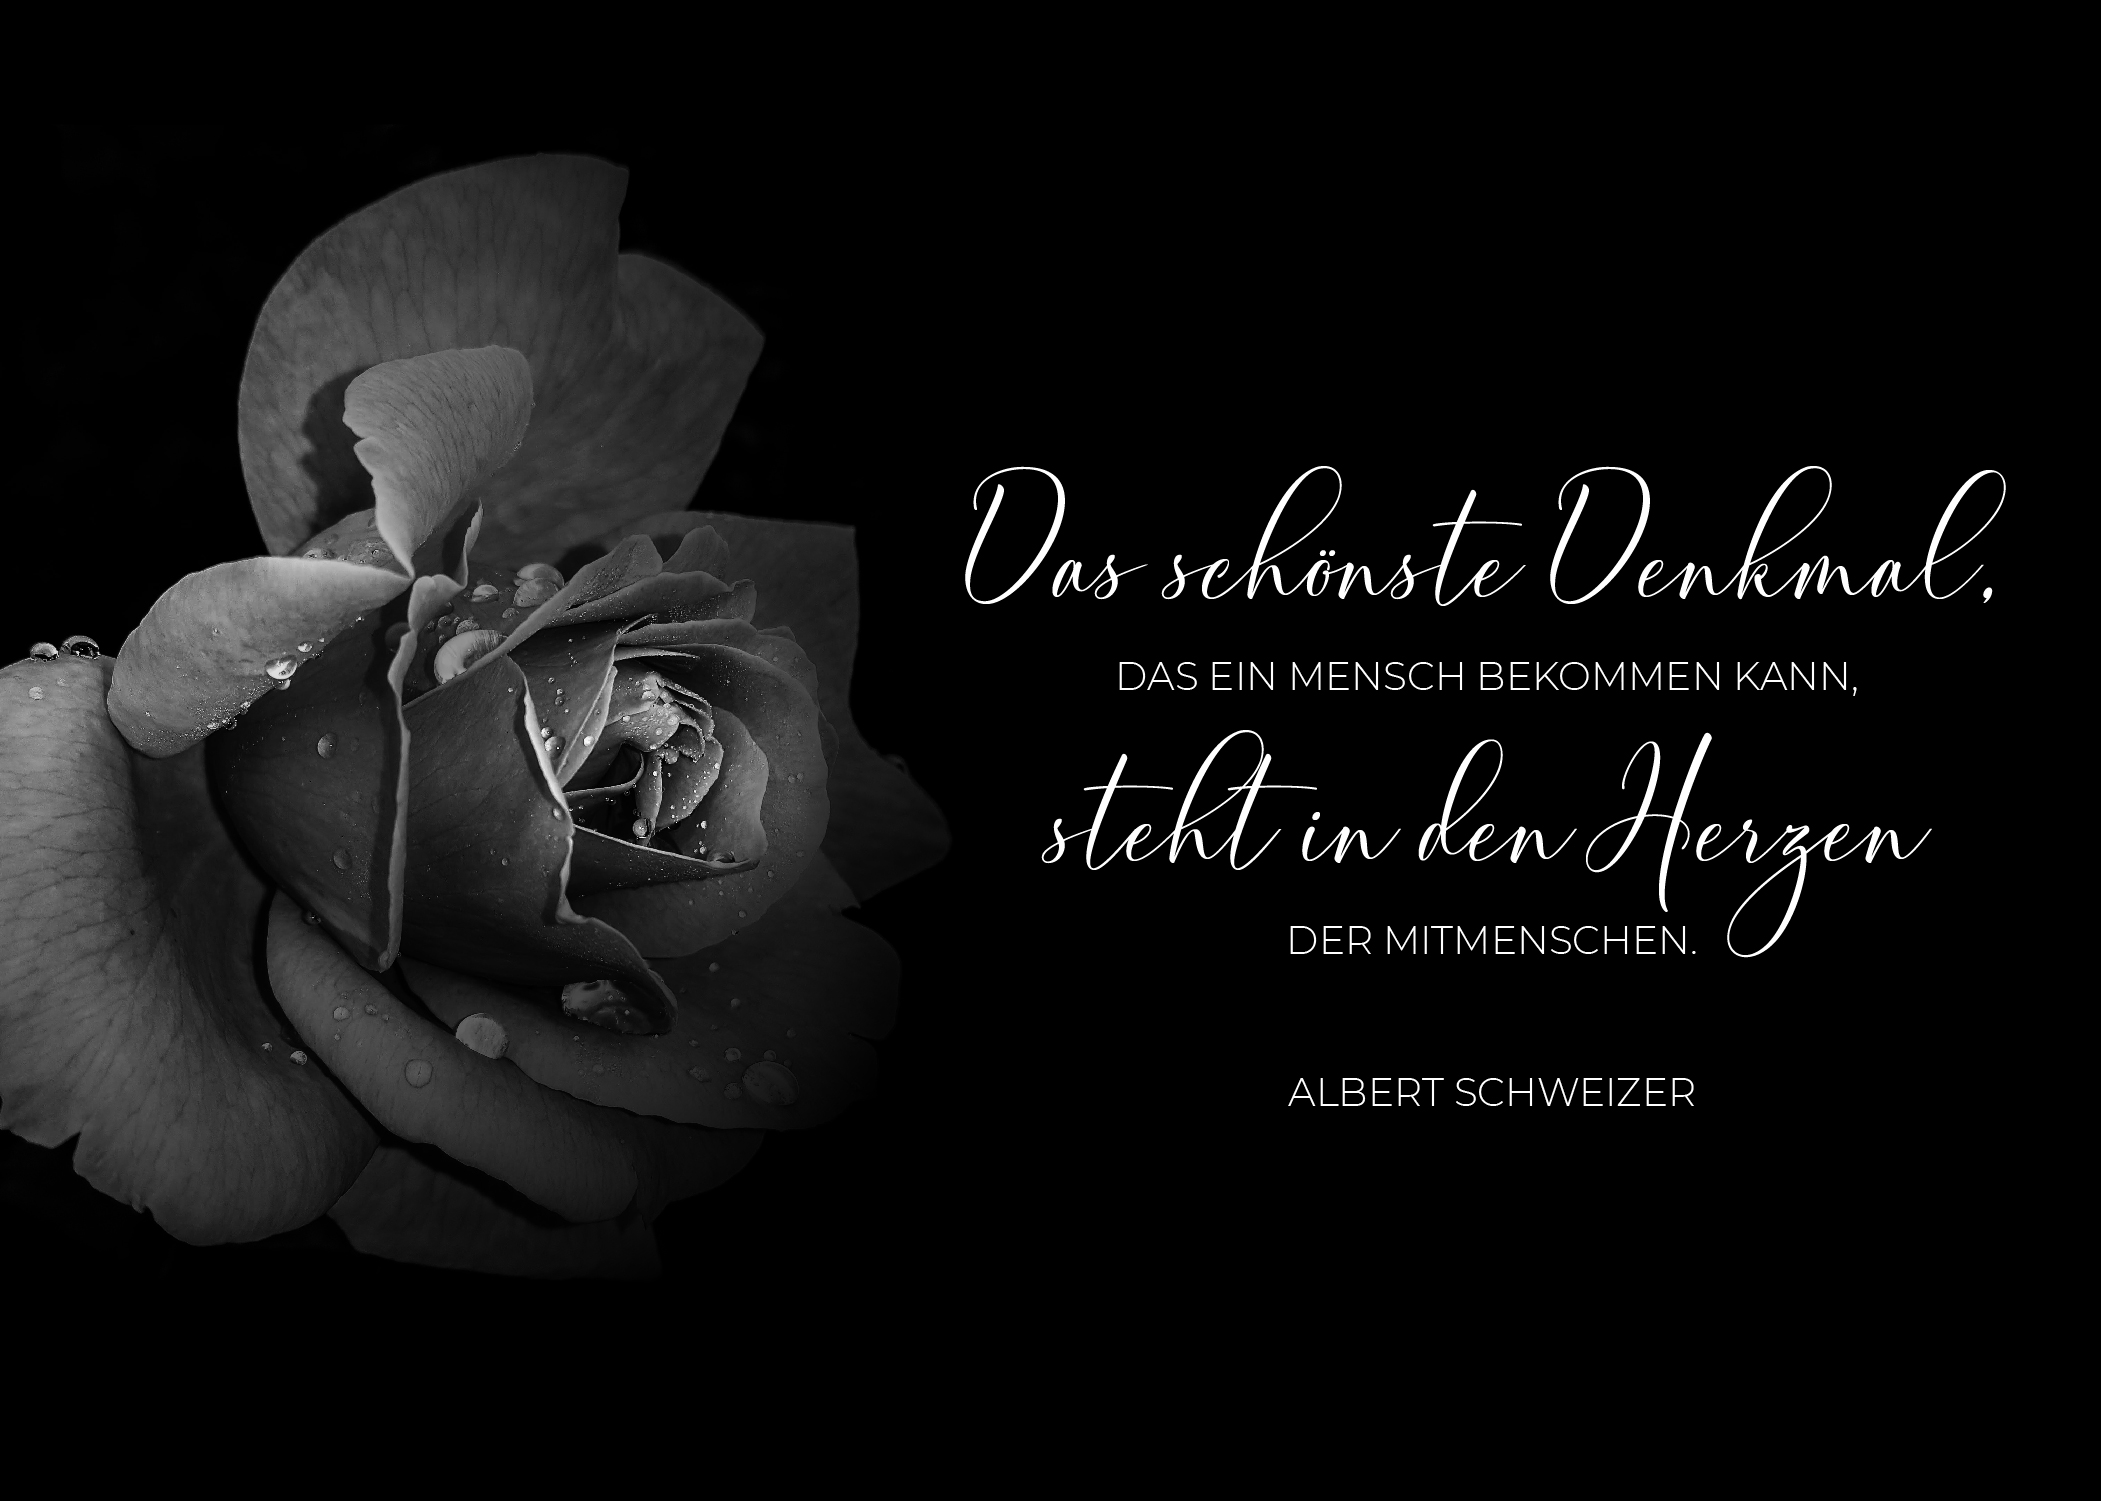 Liebevolle Trauerkarte oder Beileidskarte mit Spruch von Albert Schweizer